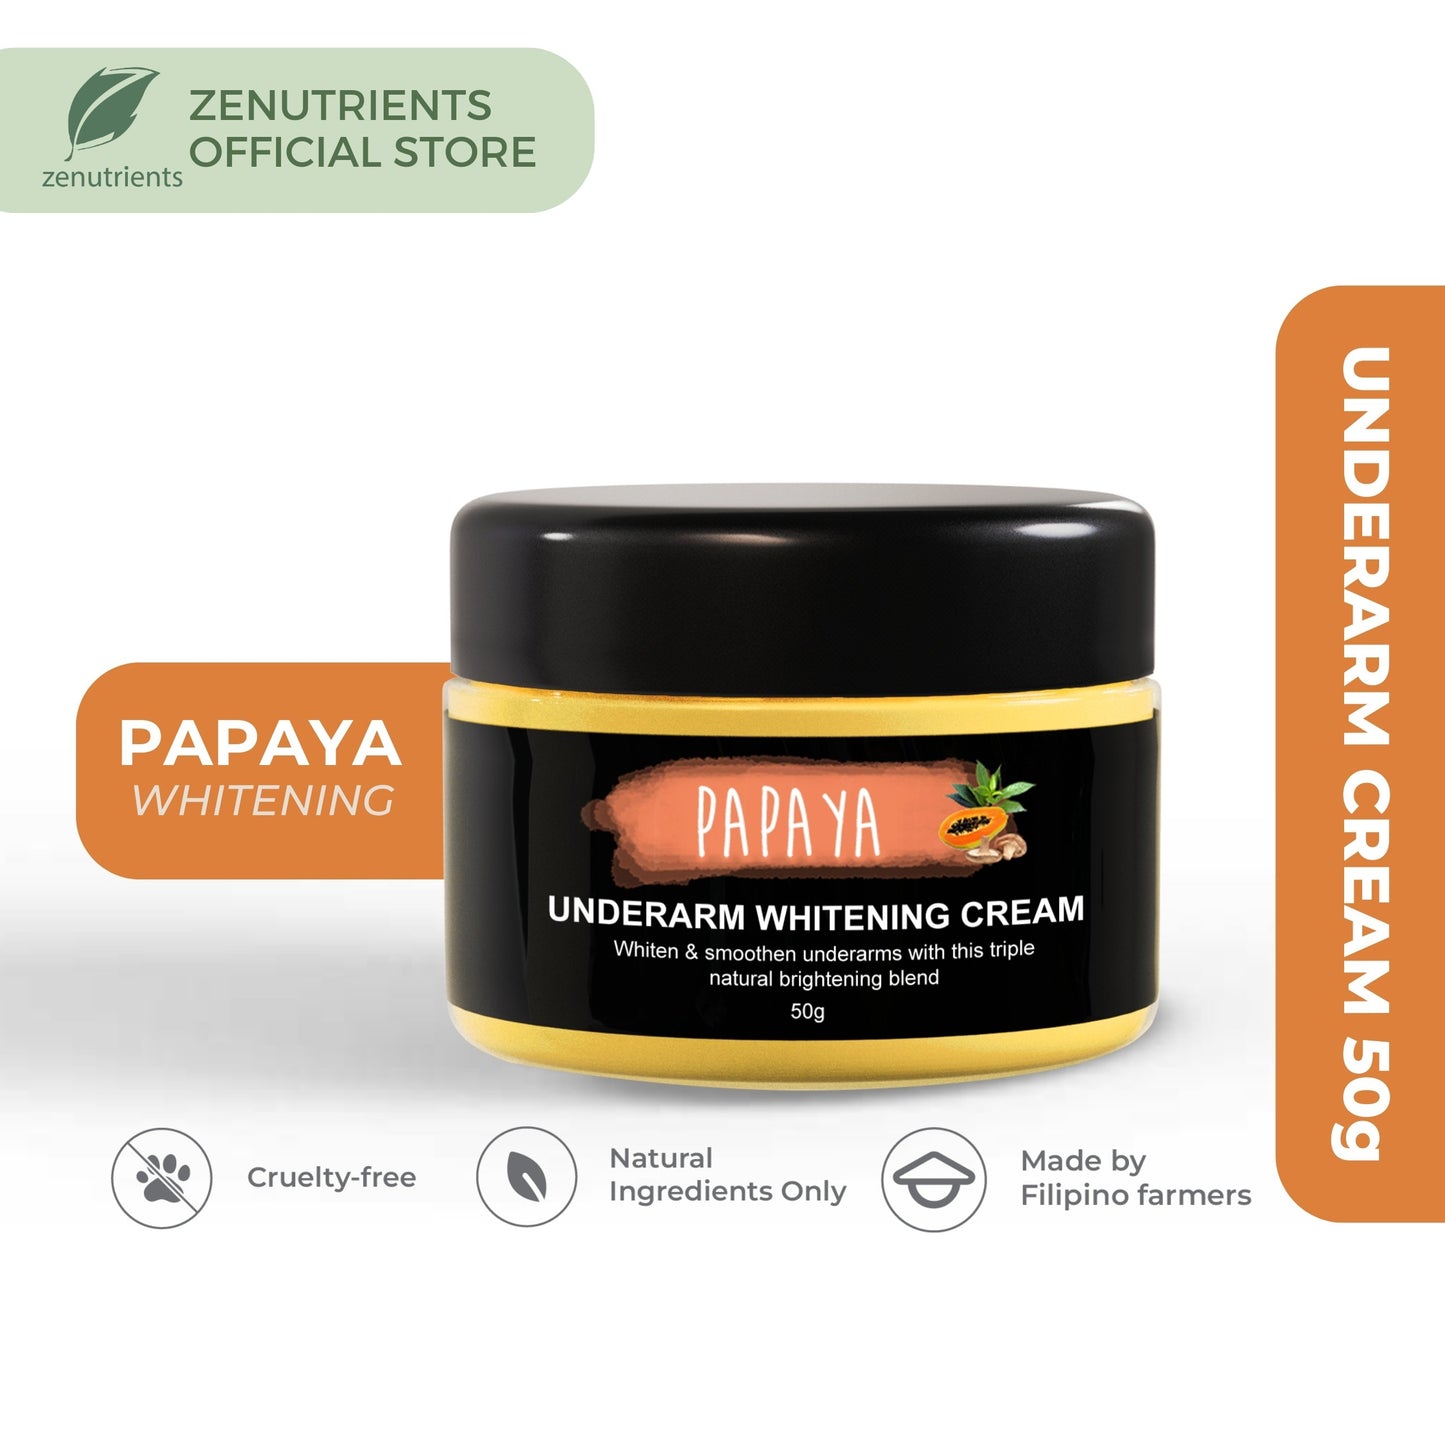 Papaya Whitening Underarm Cream 50g